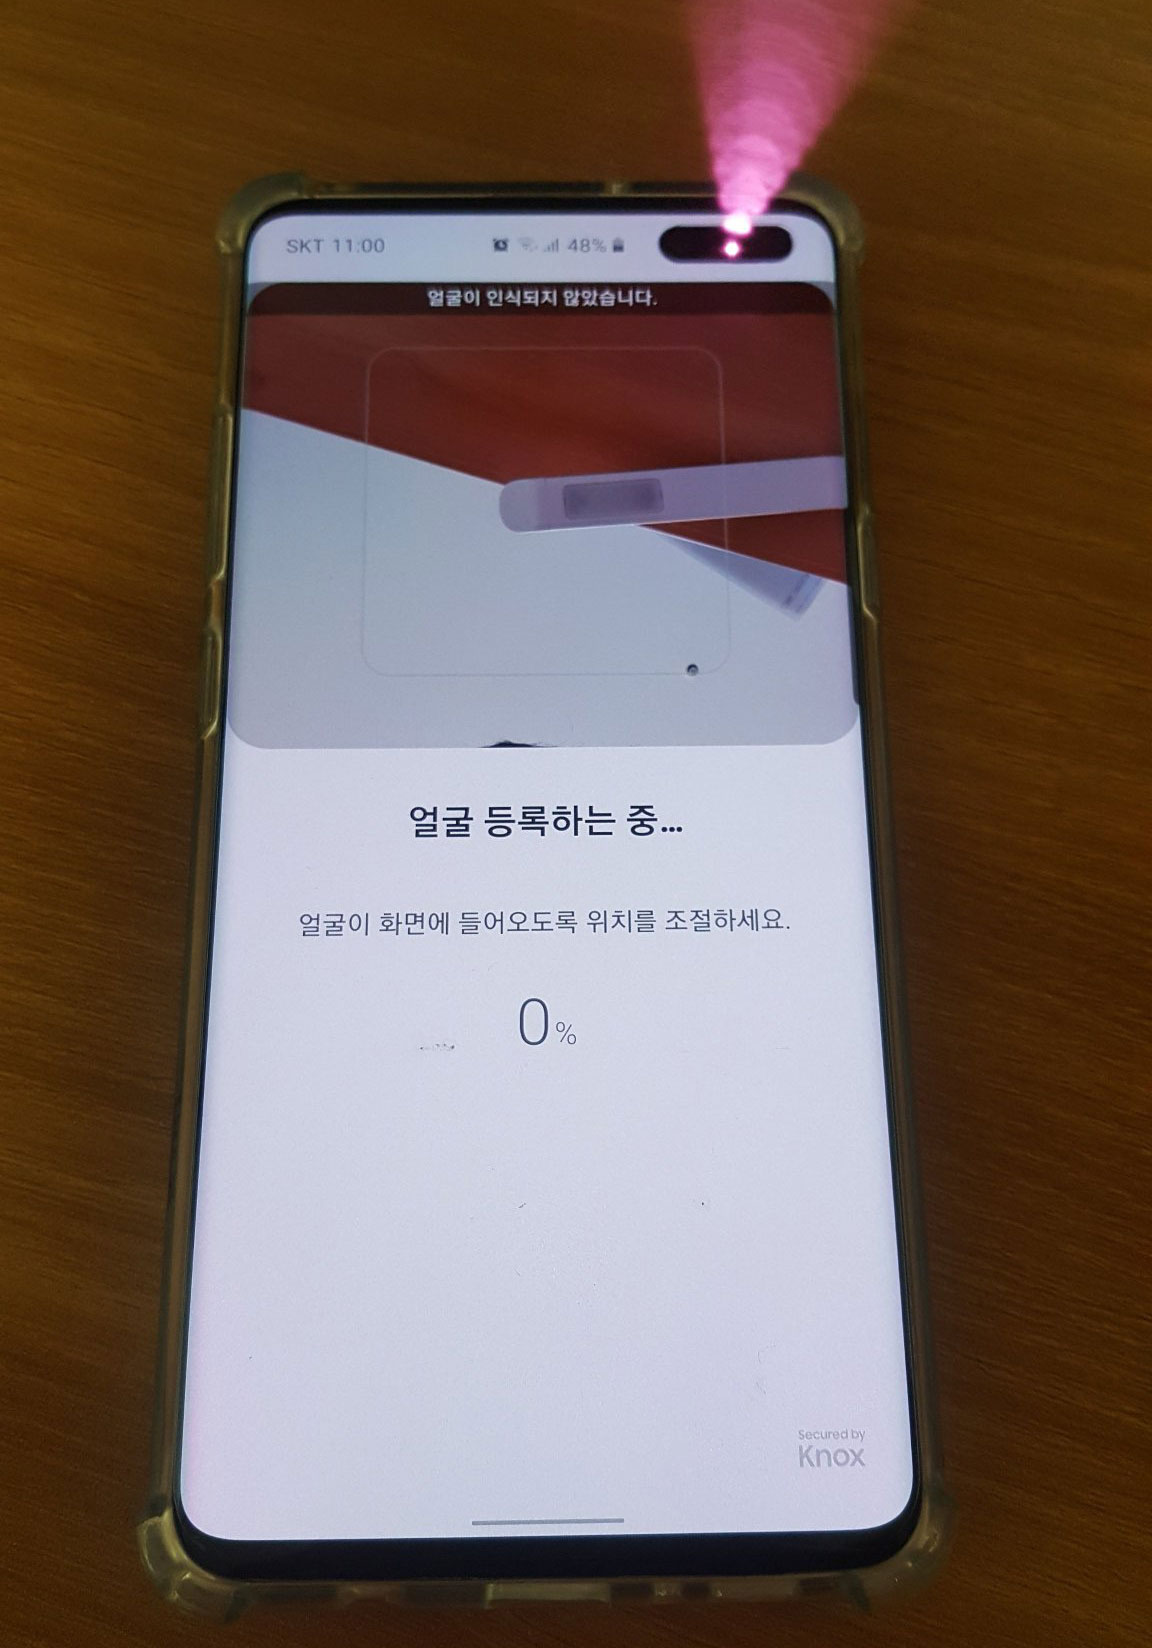 Galaxy S10 5G sẽ được
bổ sung tính năng 'Face ID' sau khi cập nhật lên
Android 10?